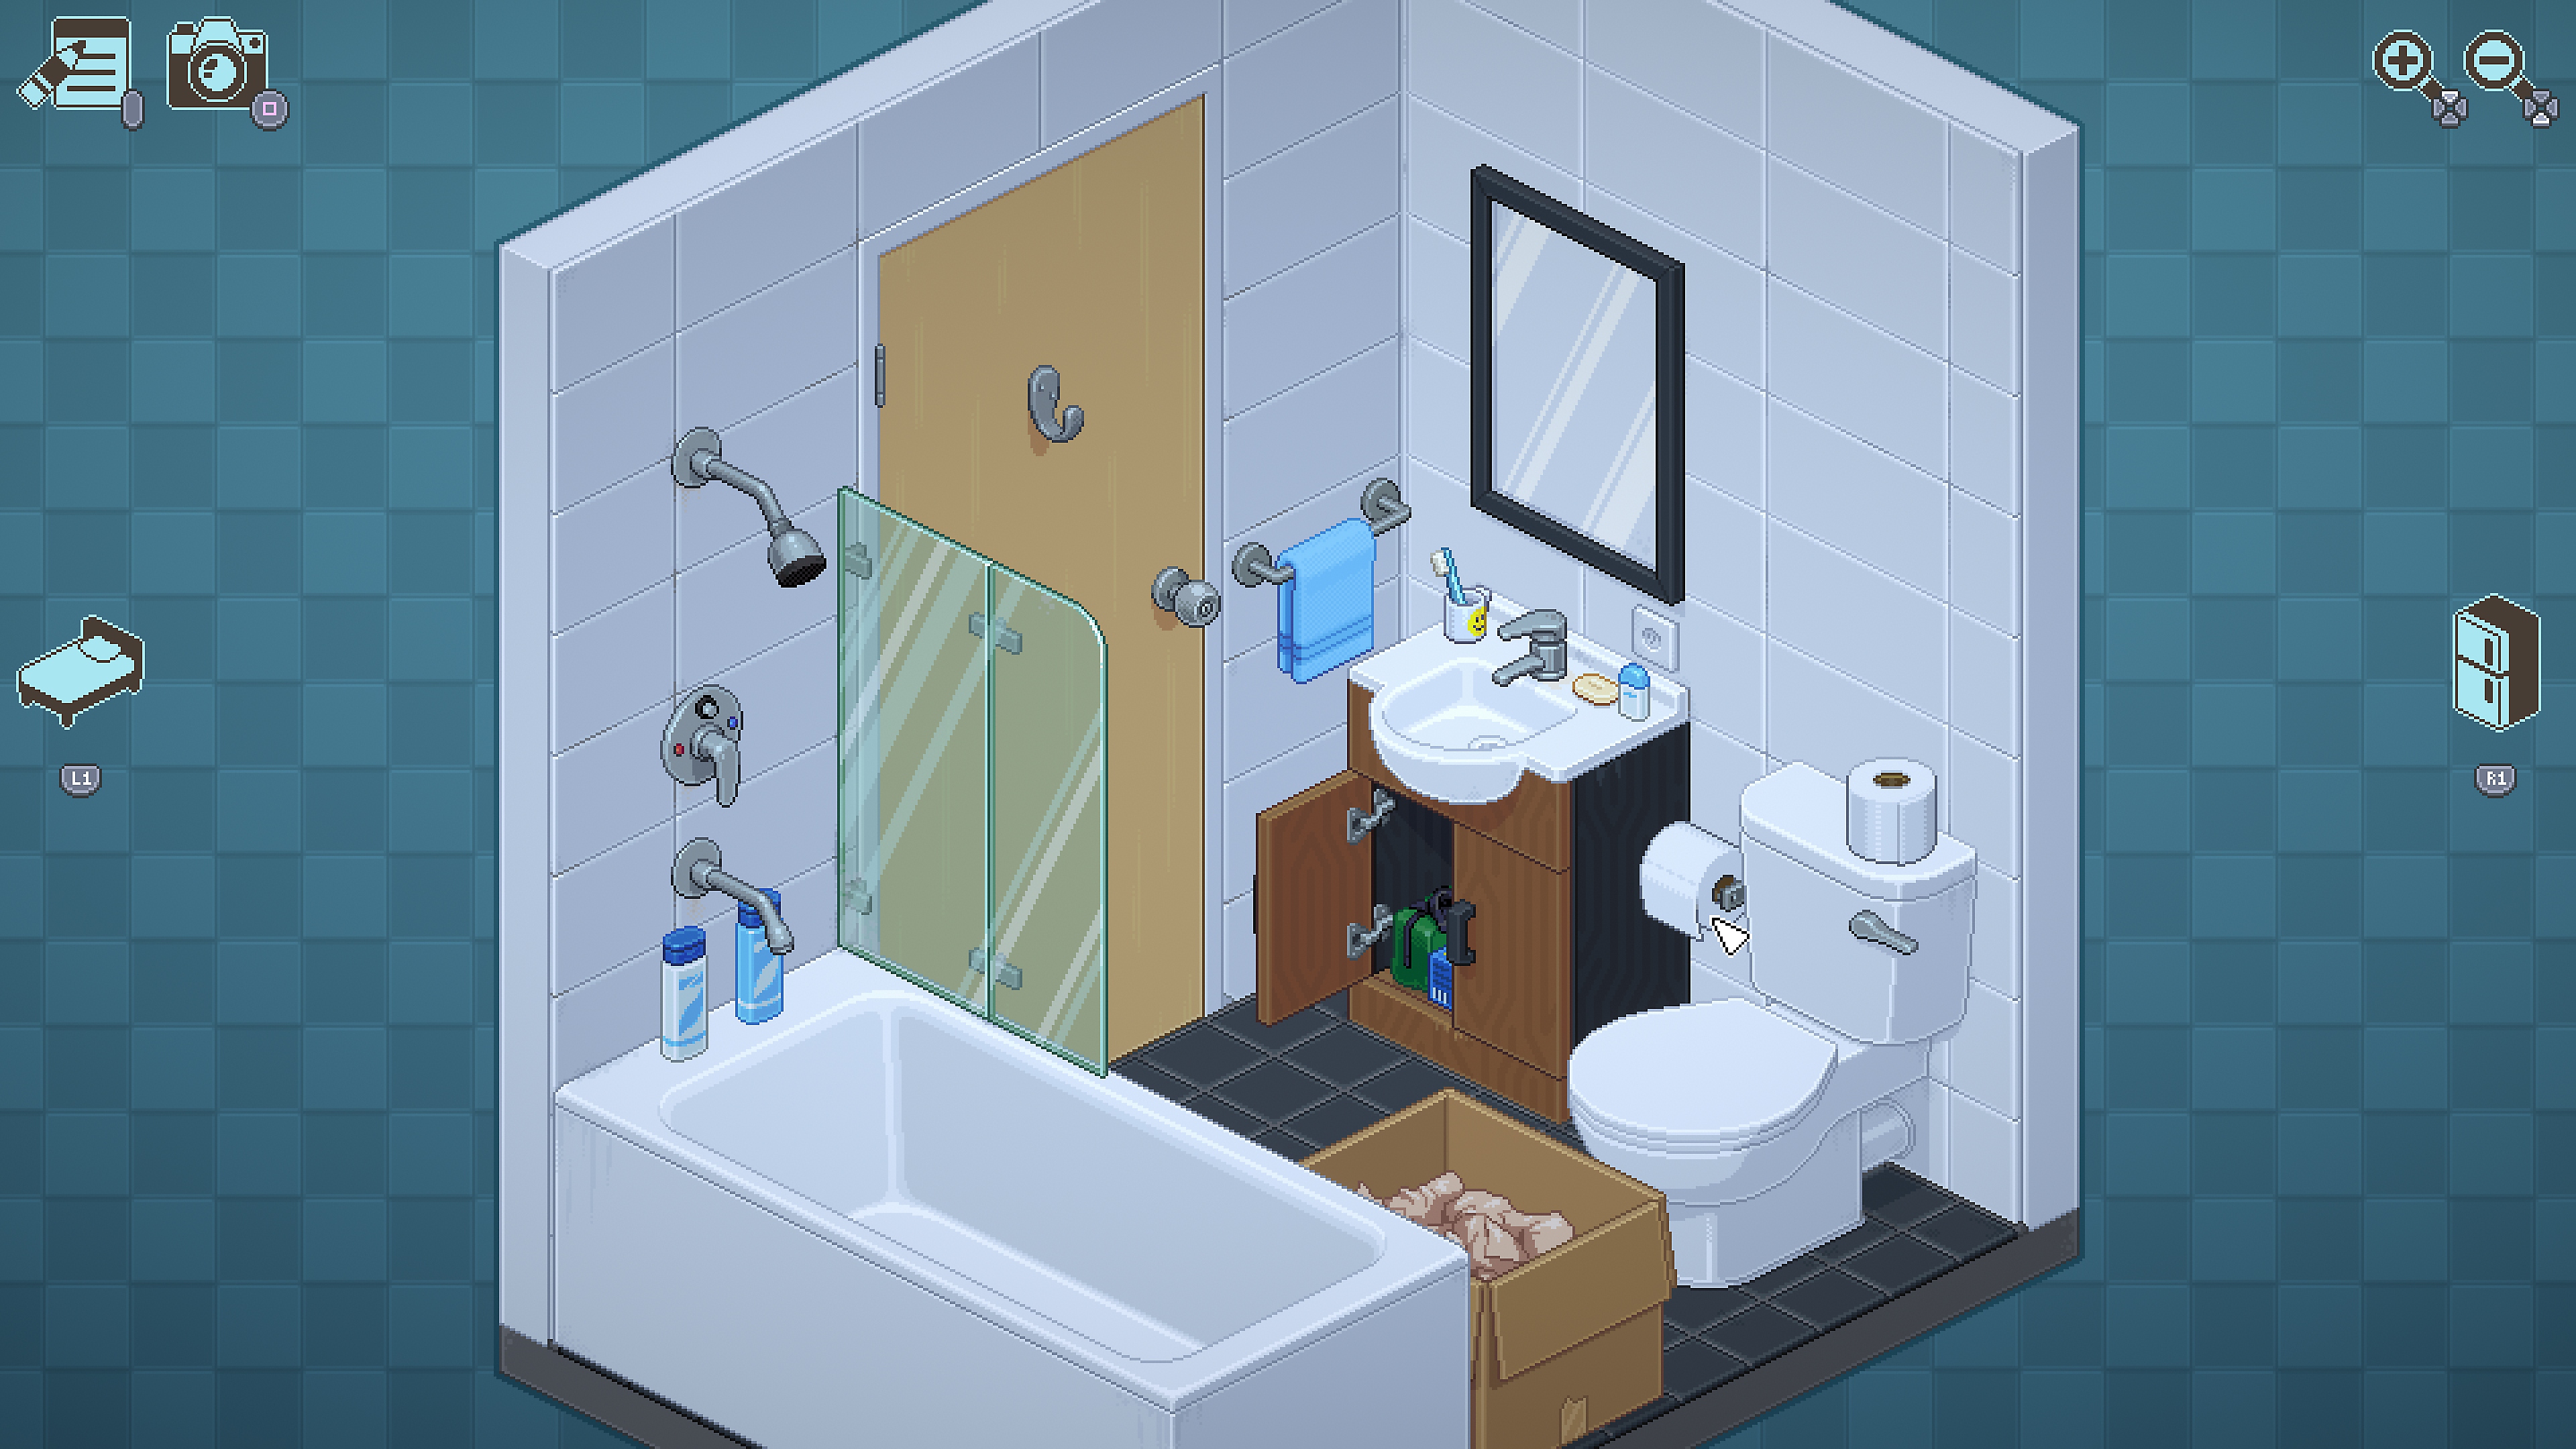 Capture d'écran d'Unpacking montrant une salle de bain